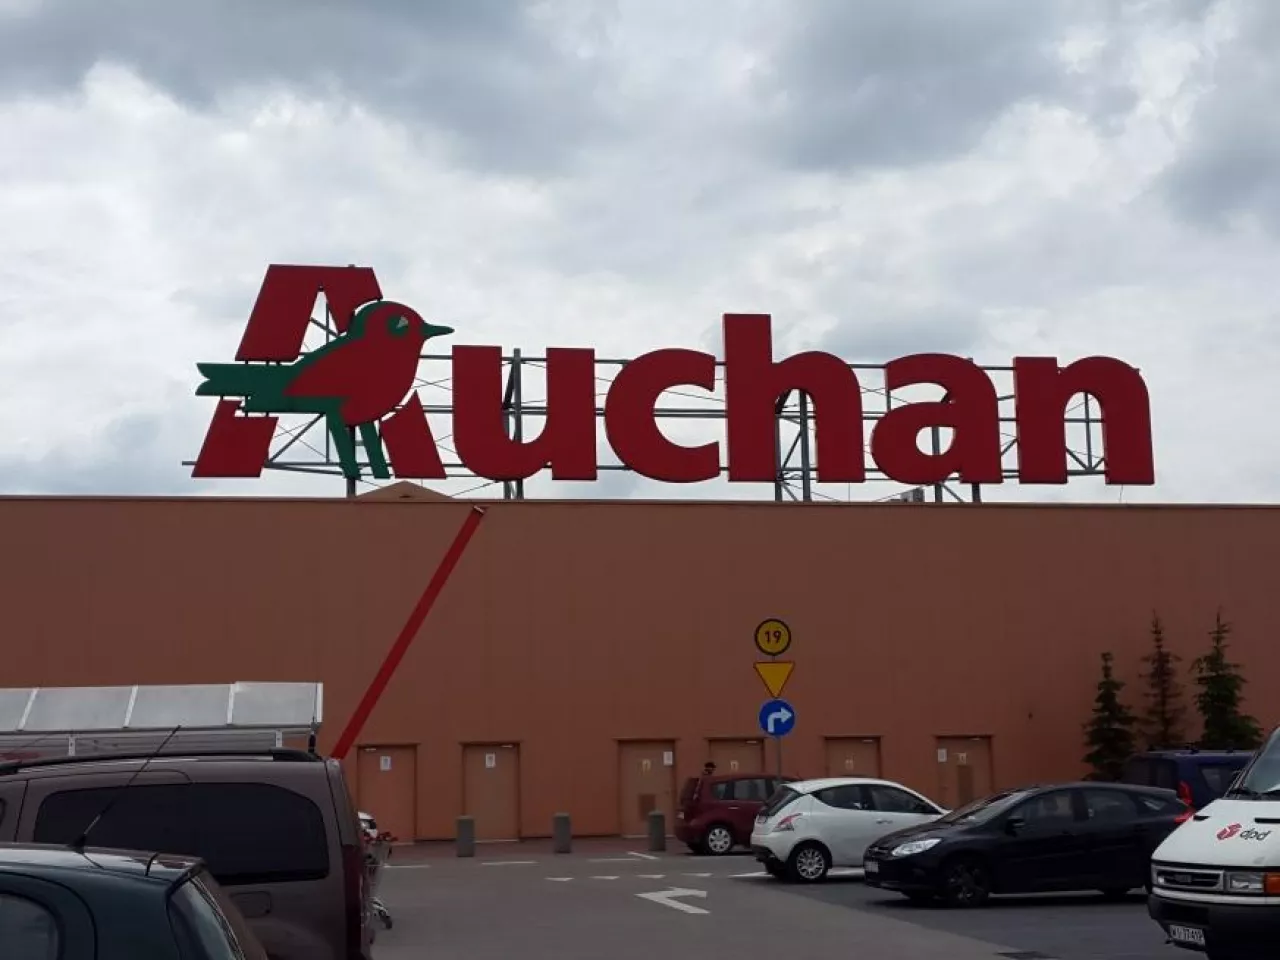 Na zdj. Centrum Handlowe Auchan Łomianki (fot. wiadomoscihandlowe.pl)